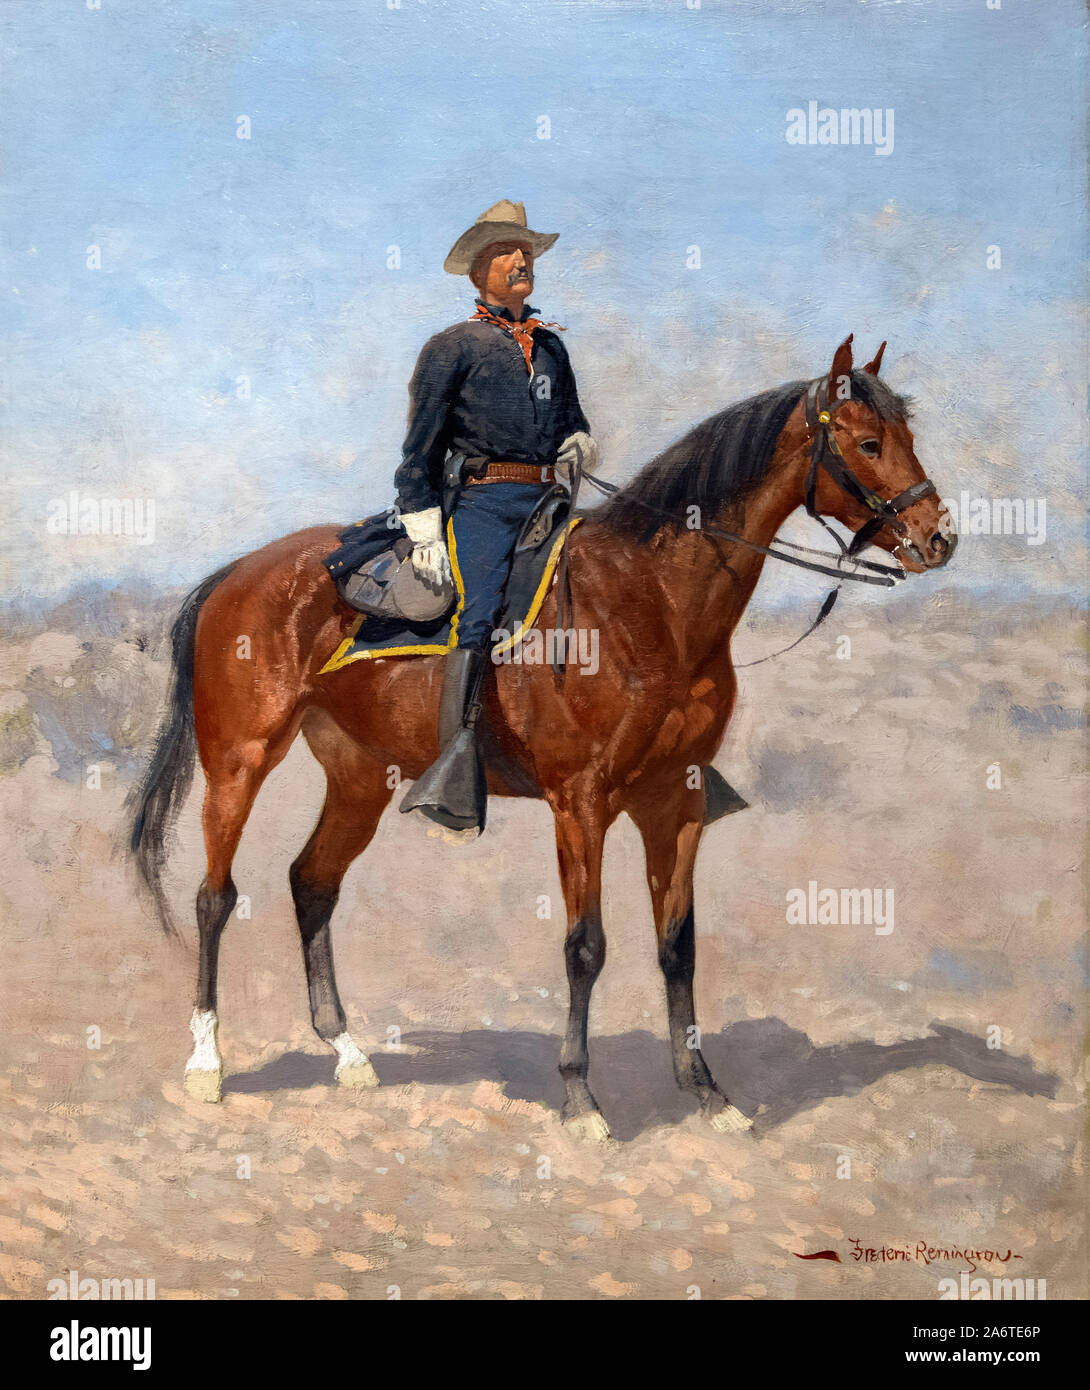 Kavallerie Trooper auf dem Pferd von Frederic Remington (1861-1909), Öl auf Leinwand, 1890 Stockfoto